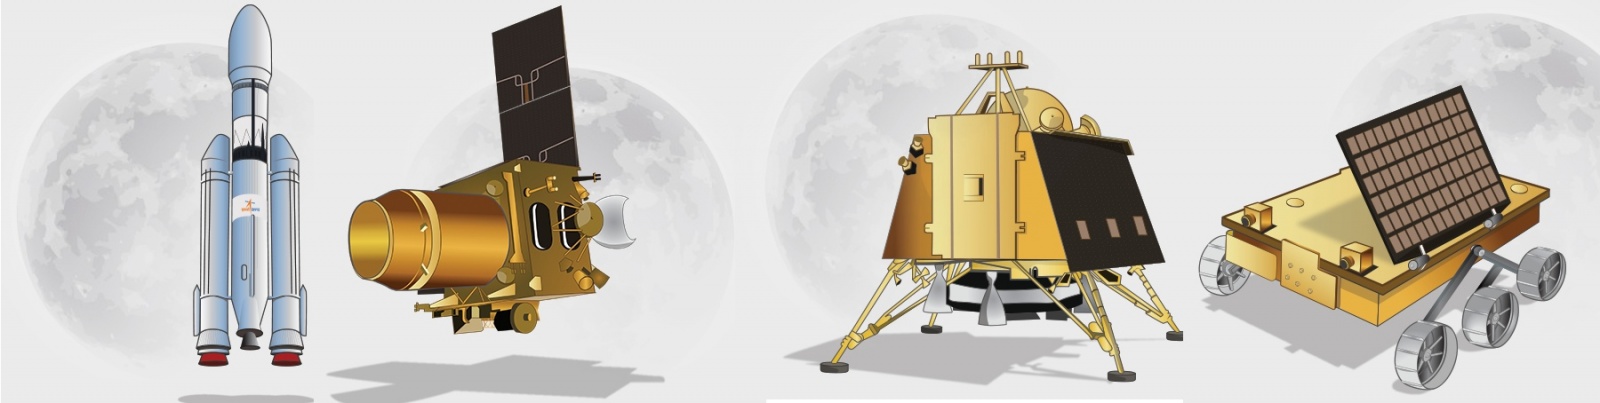 Слева: ракета-носитель GSLV Mk-III, слева в центре: орбитальный модуль, справа в центре: посадочный модуль Викарм, справа: шестиколесный ровер-планетоход Прагъян